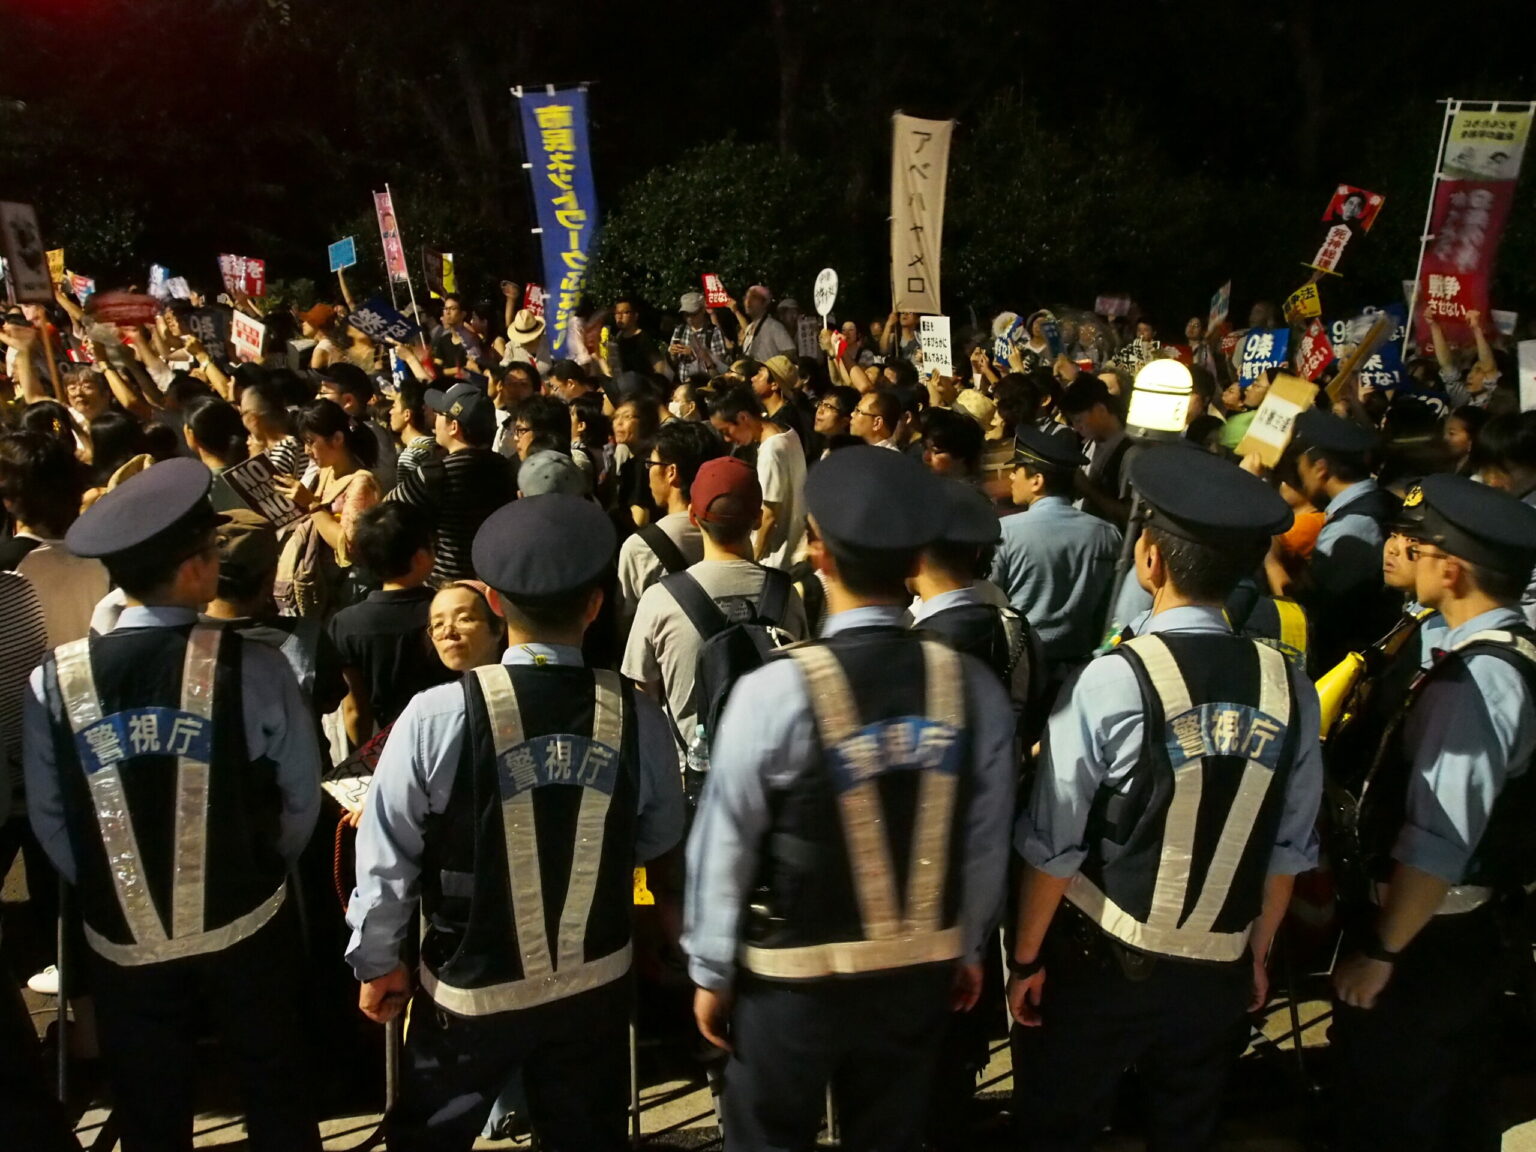 Ein großes Polizeiaufgebot begleitet Demonstrationen in Japan häufig, so auch bei den Protesten der SEALDs © Sonja Blaschke